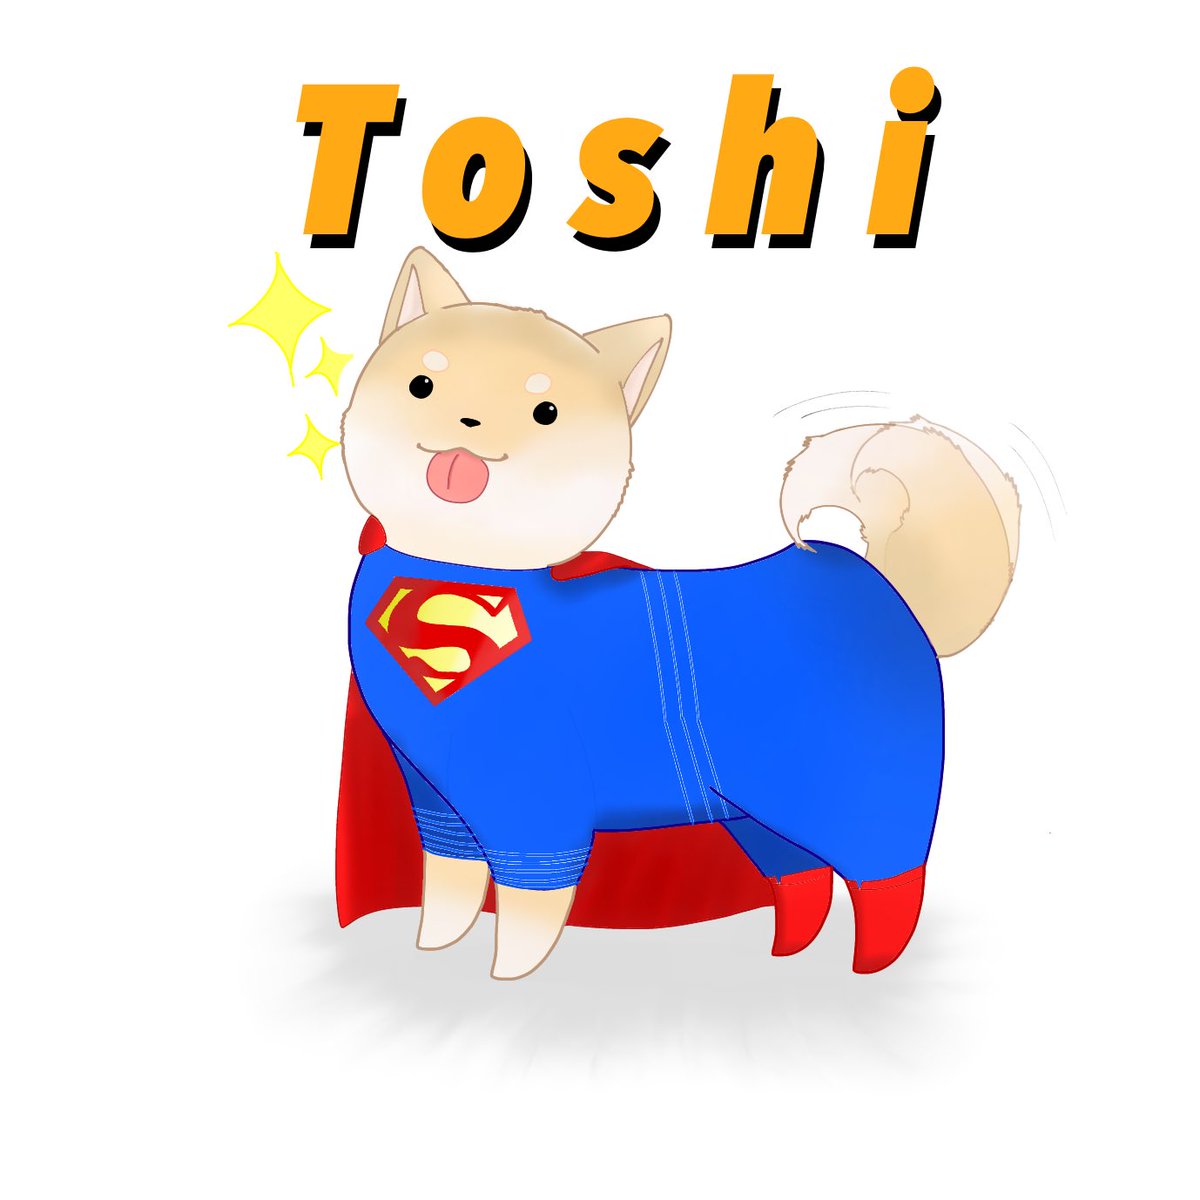 Toshi 50人クラフト 顔ちょっと向いてるのいいですね スーパーマンスキンは初めてなので嬉しい 返信遅れちゃって申し訳ないです 可愛いイラスト有難うございます